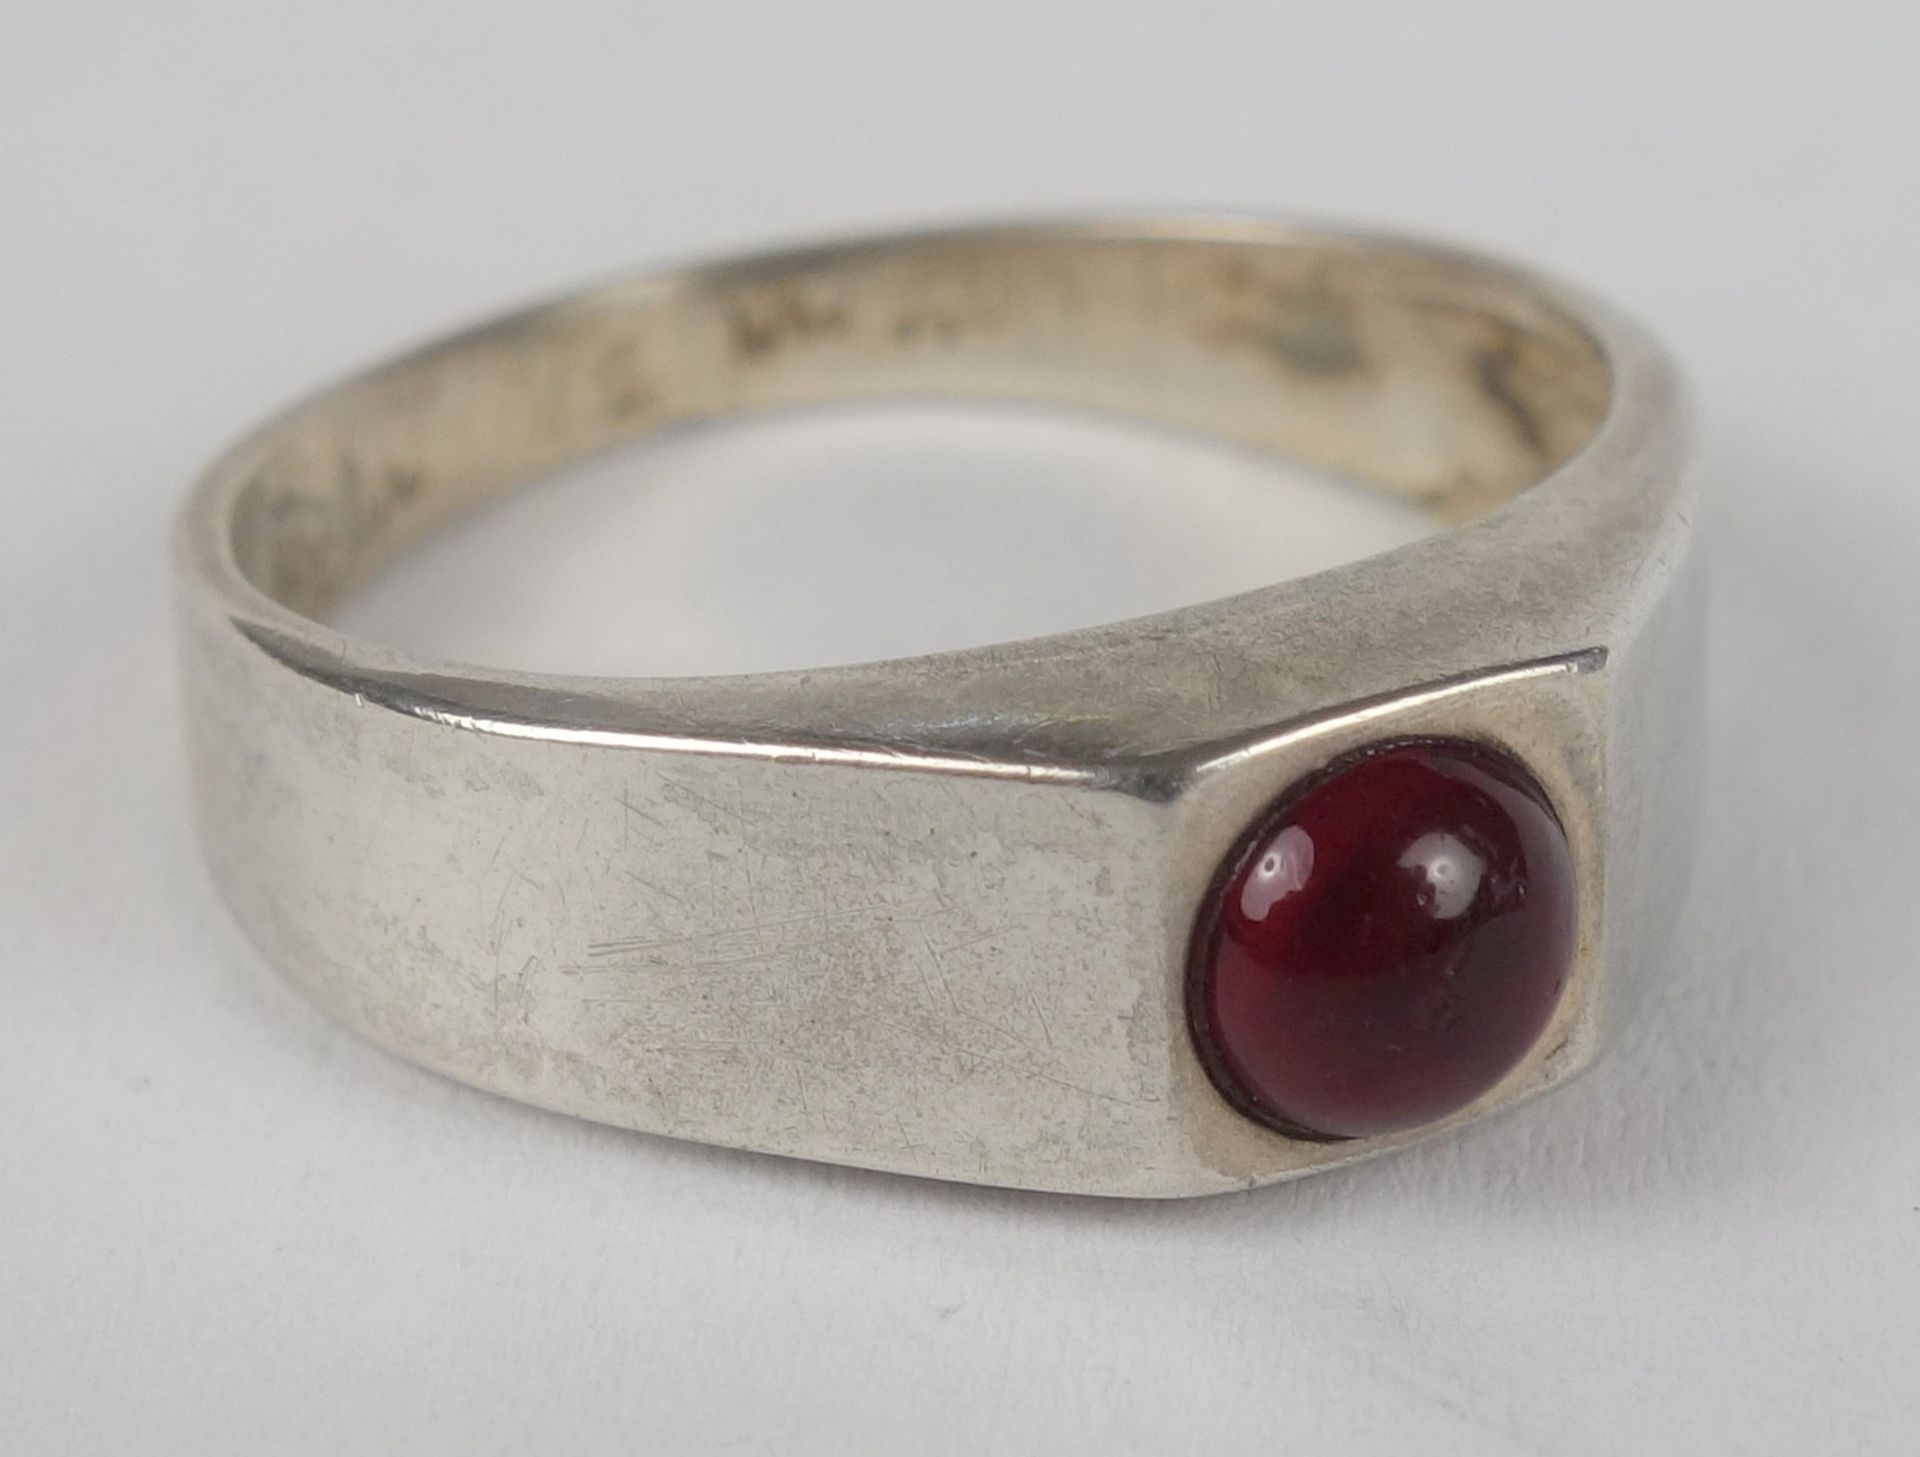 Ring mit rotem Stein (Almandin), 835er Silber, Juwel, Gew.2,25g